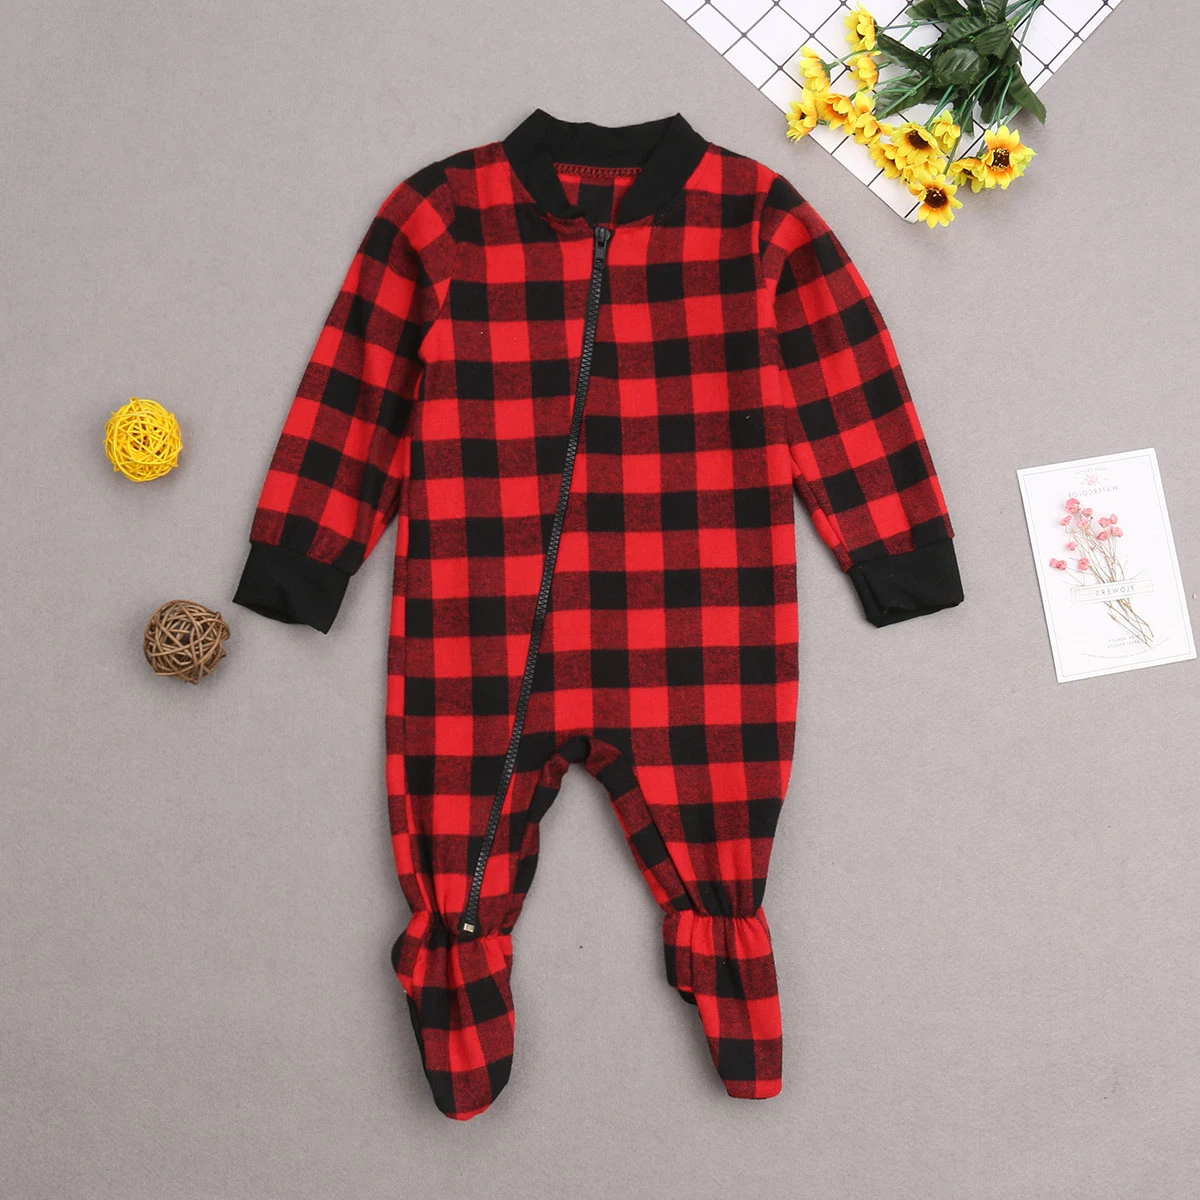 Хлопковый пижамный комплект на Рождество для всей семьи; тренировочный костюм для мужчин, женщин, детей и малышей; одежда для сна в красную клетку; Черный однотонный топ; повседневные штаны